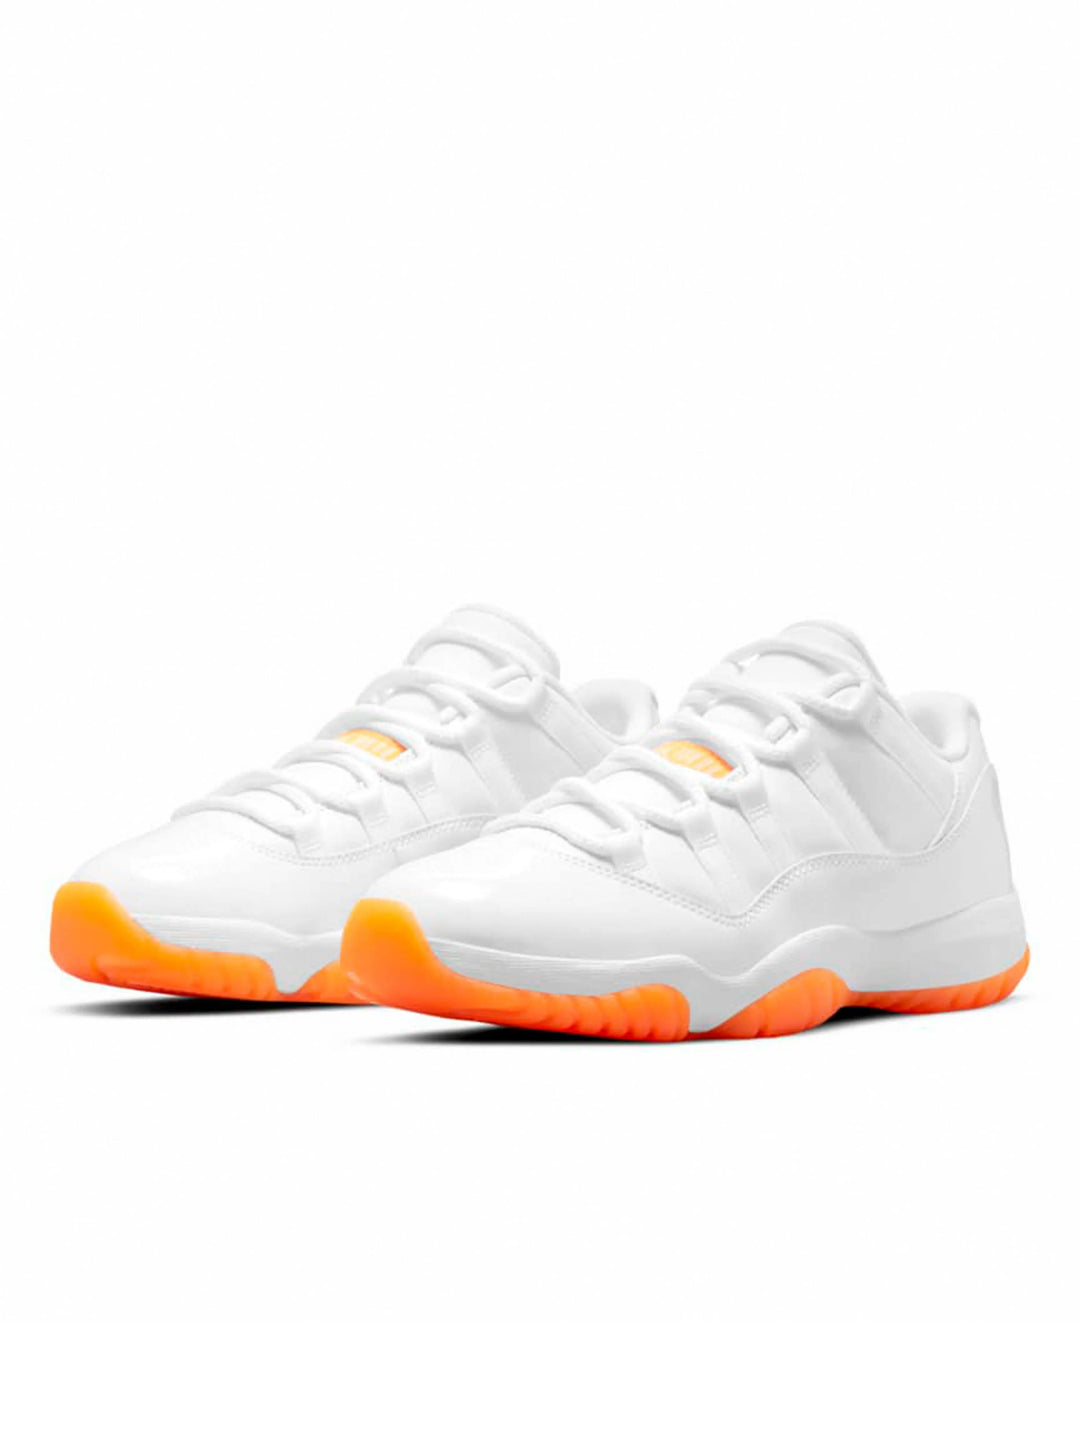 Nike Air Jordan 11 Low Citrus [2021] [W] Prior